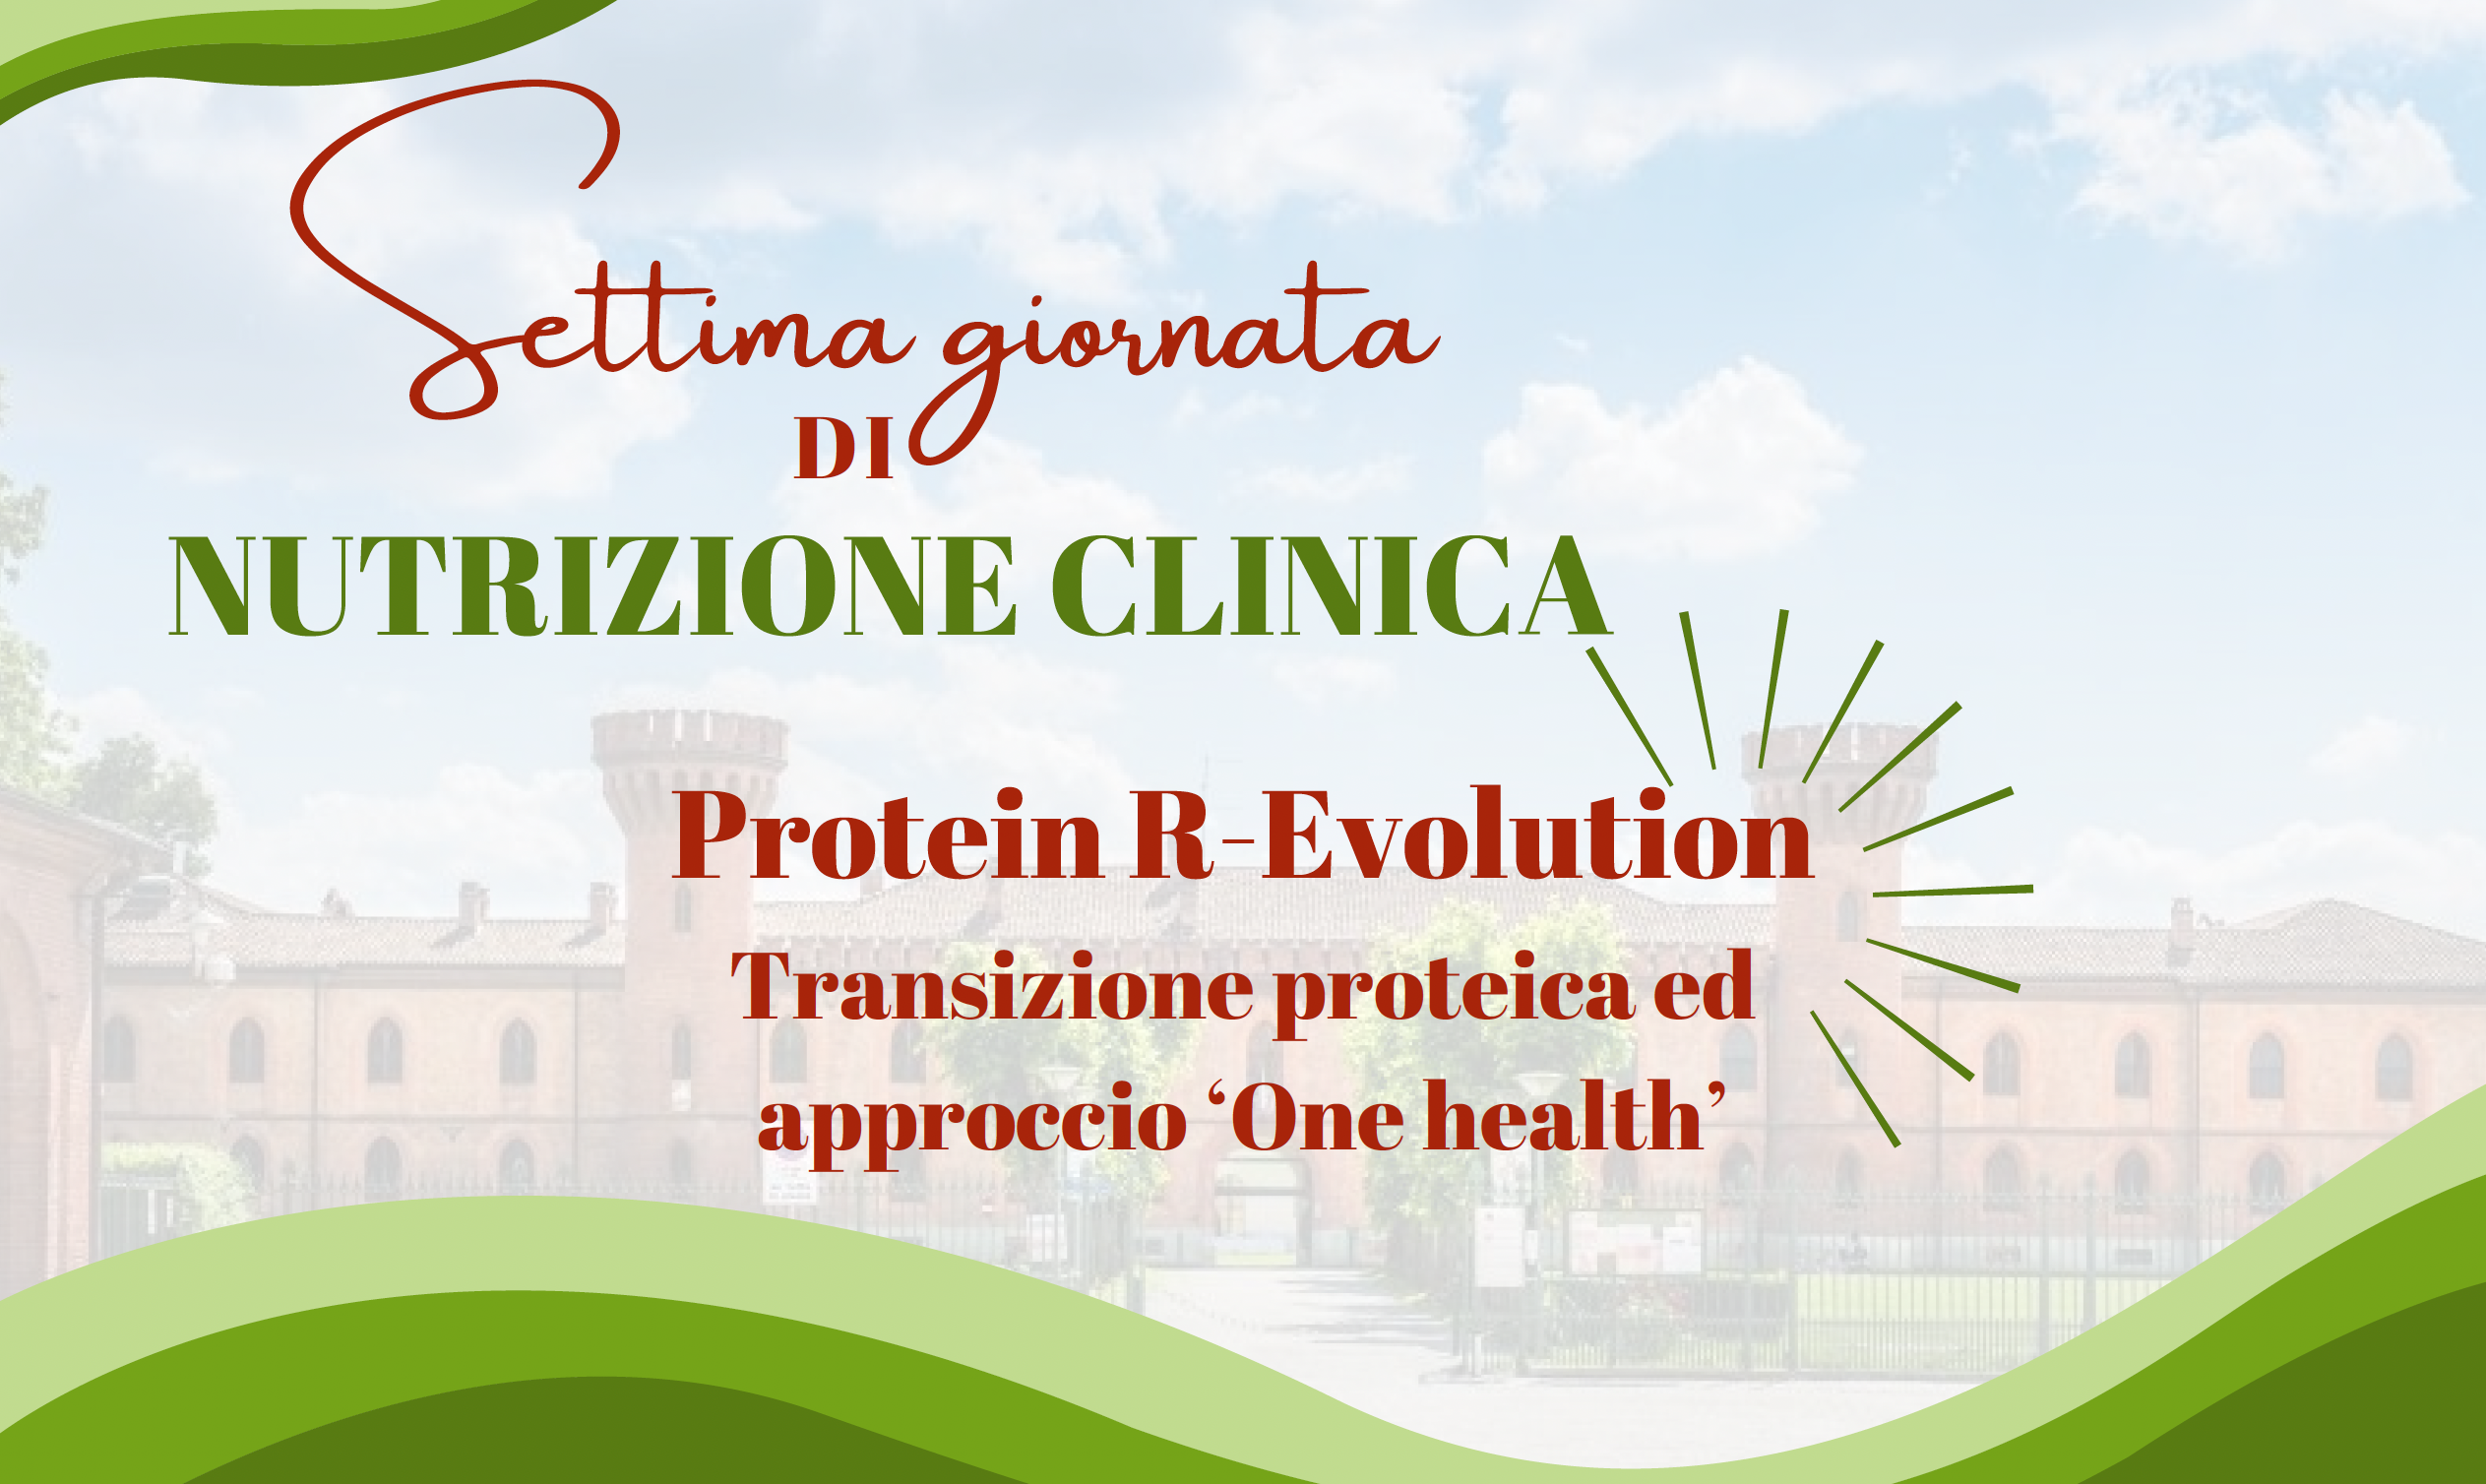 Protein R-Evolution Transizione proteica ed approccio ‘One health’